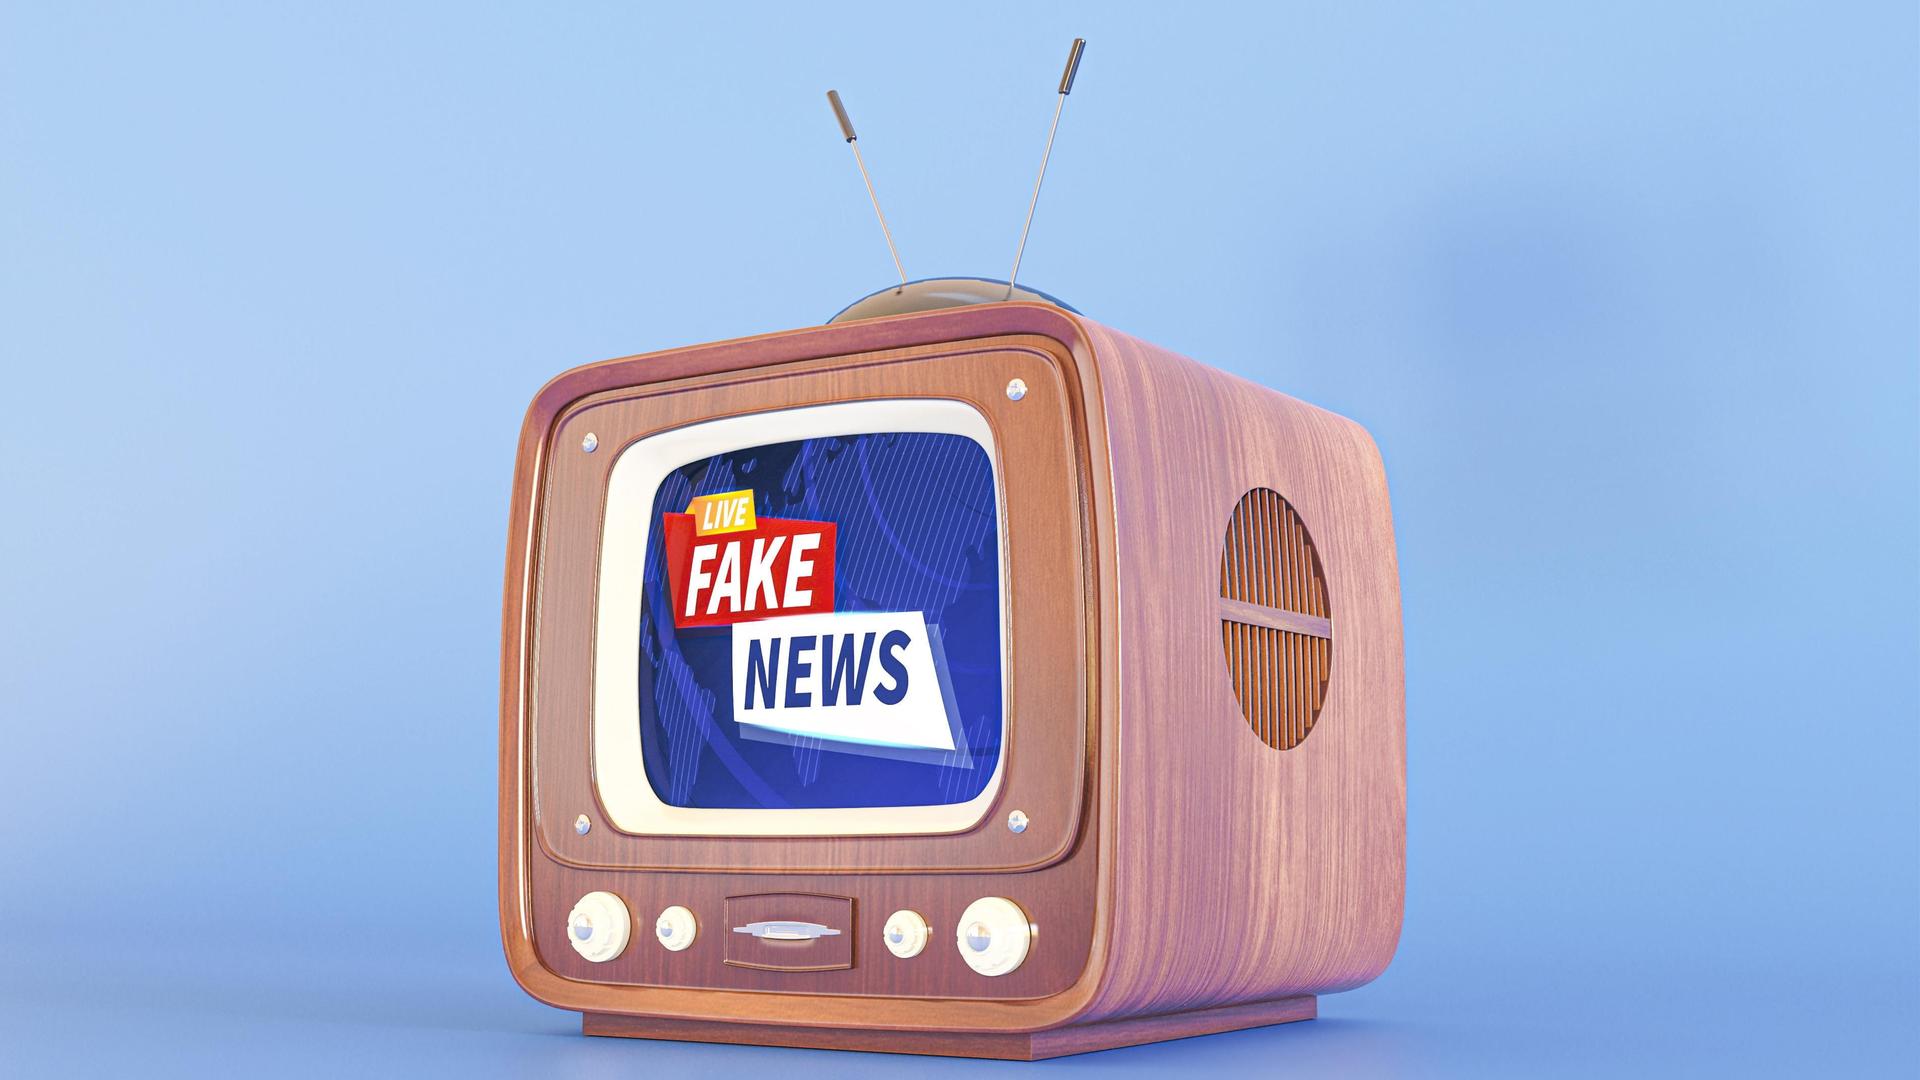 Ein Röhrenfernseher, auf dem Bildschirm steht "Fake News".